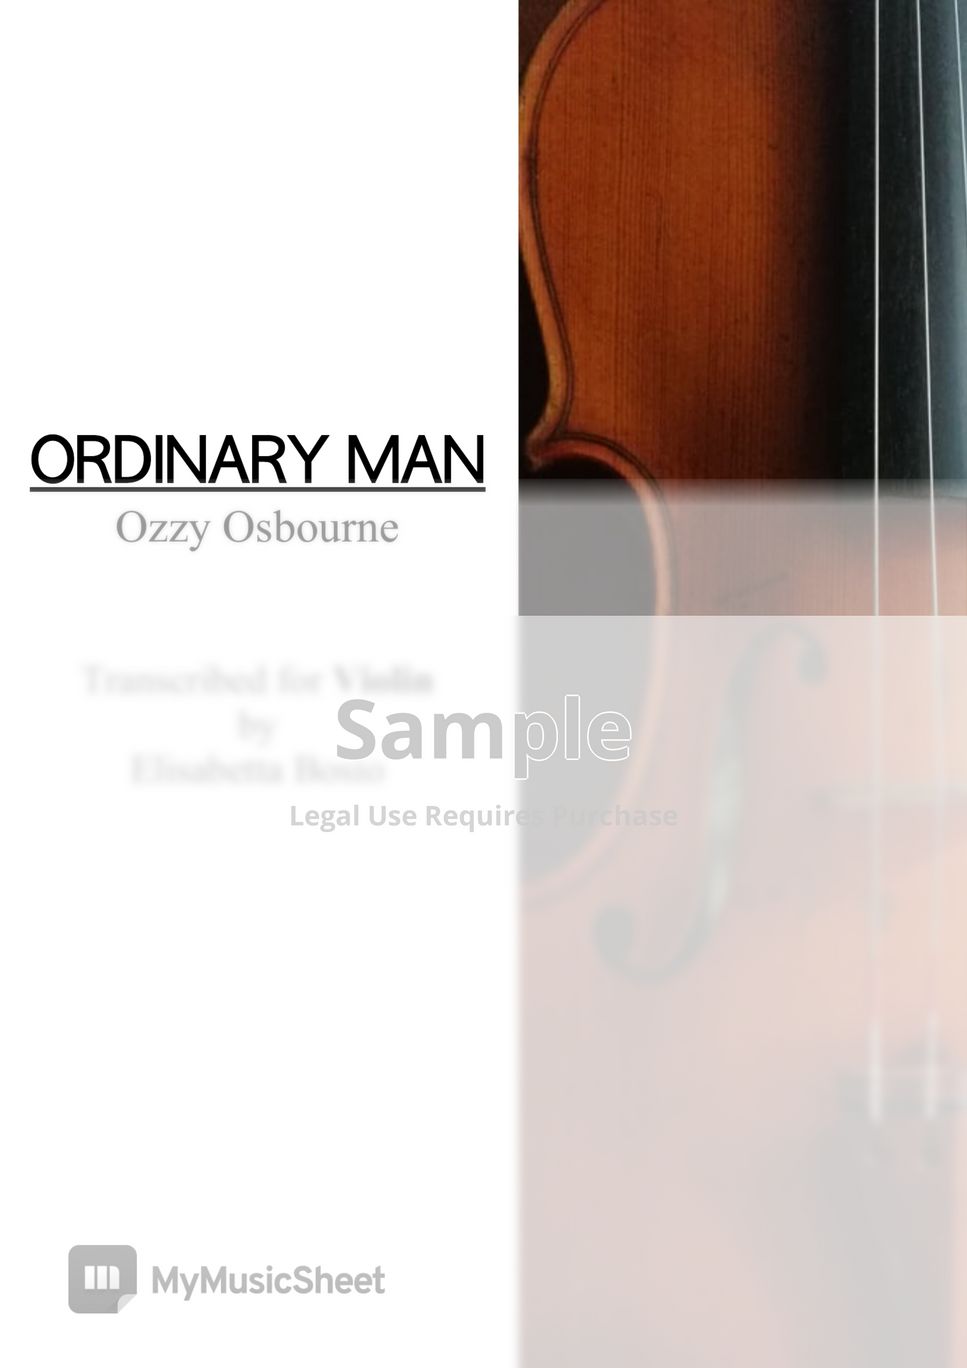 Ozzy Osbourne - Ordinary Man - VIOLIN SHEET by Elisabetta Bosio